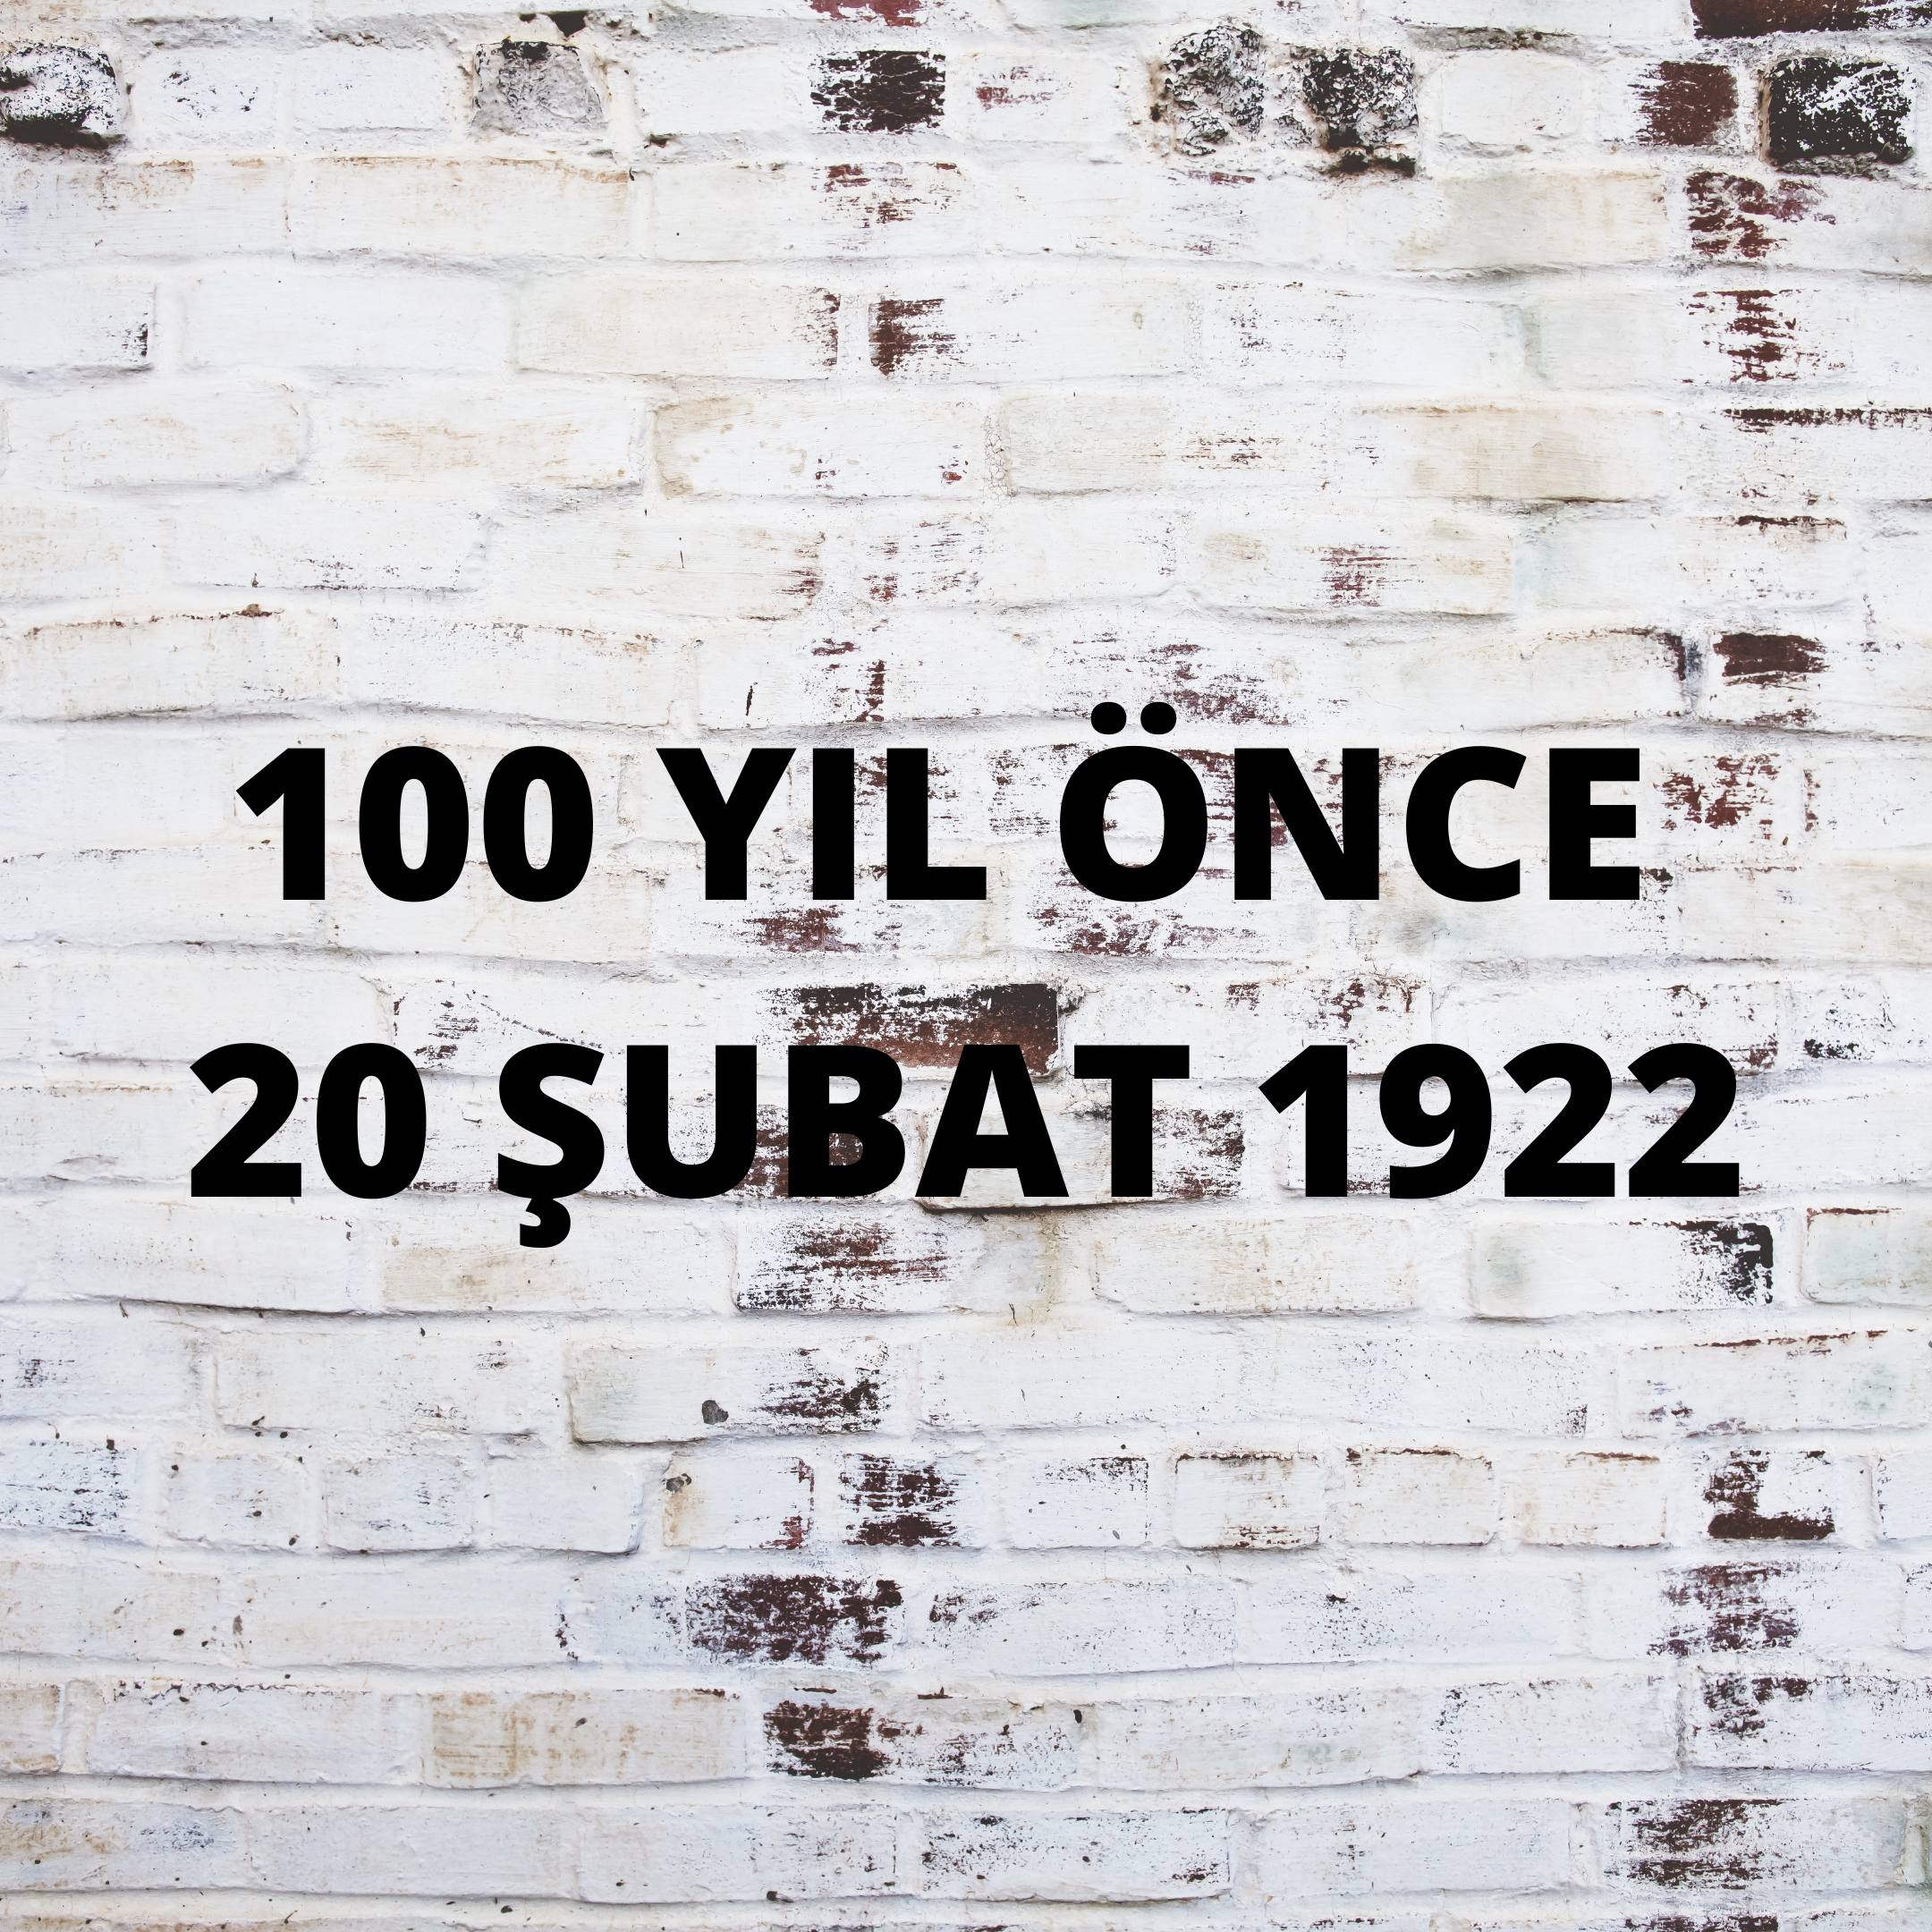 100 YIL ÖNCE 20 ŞUBAT 1922